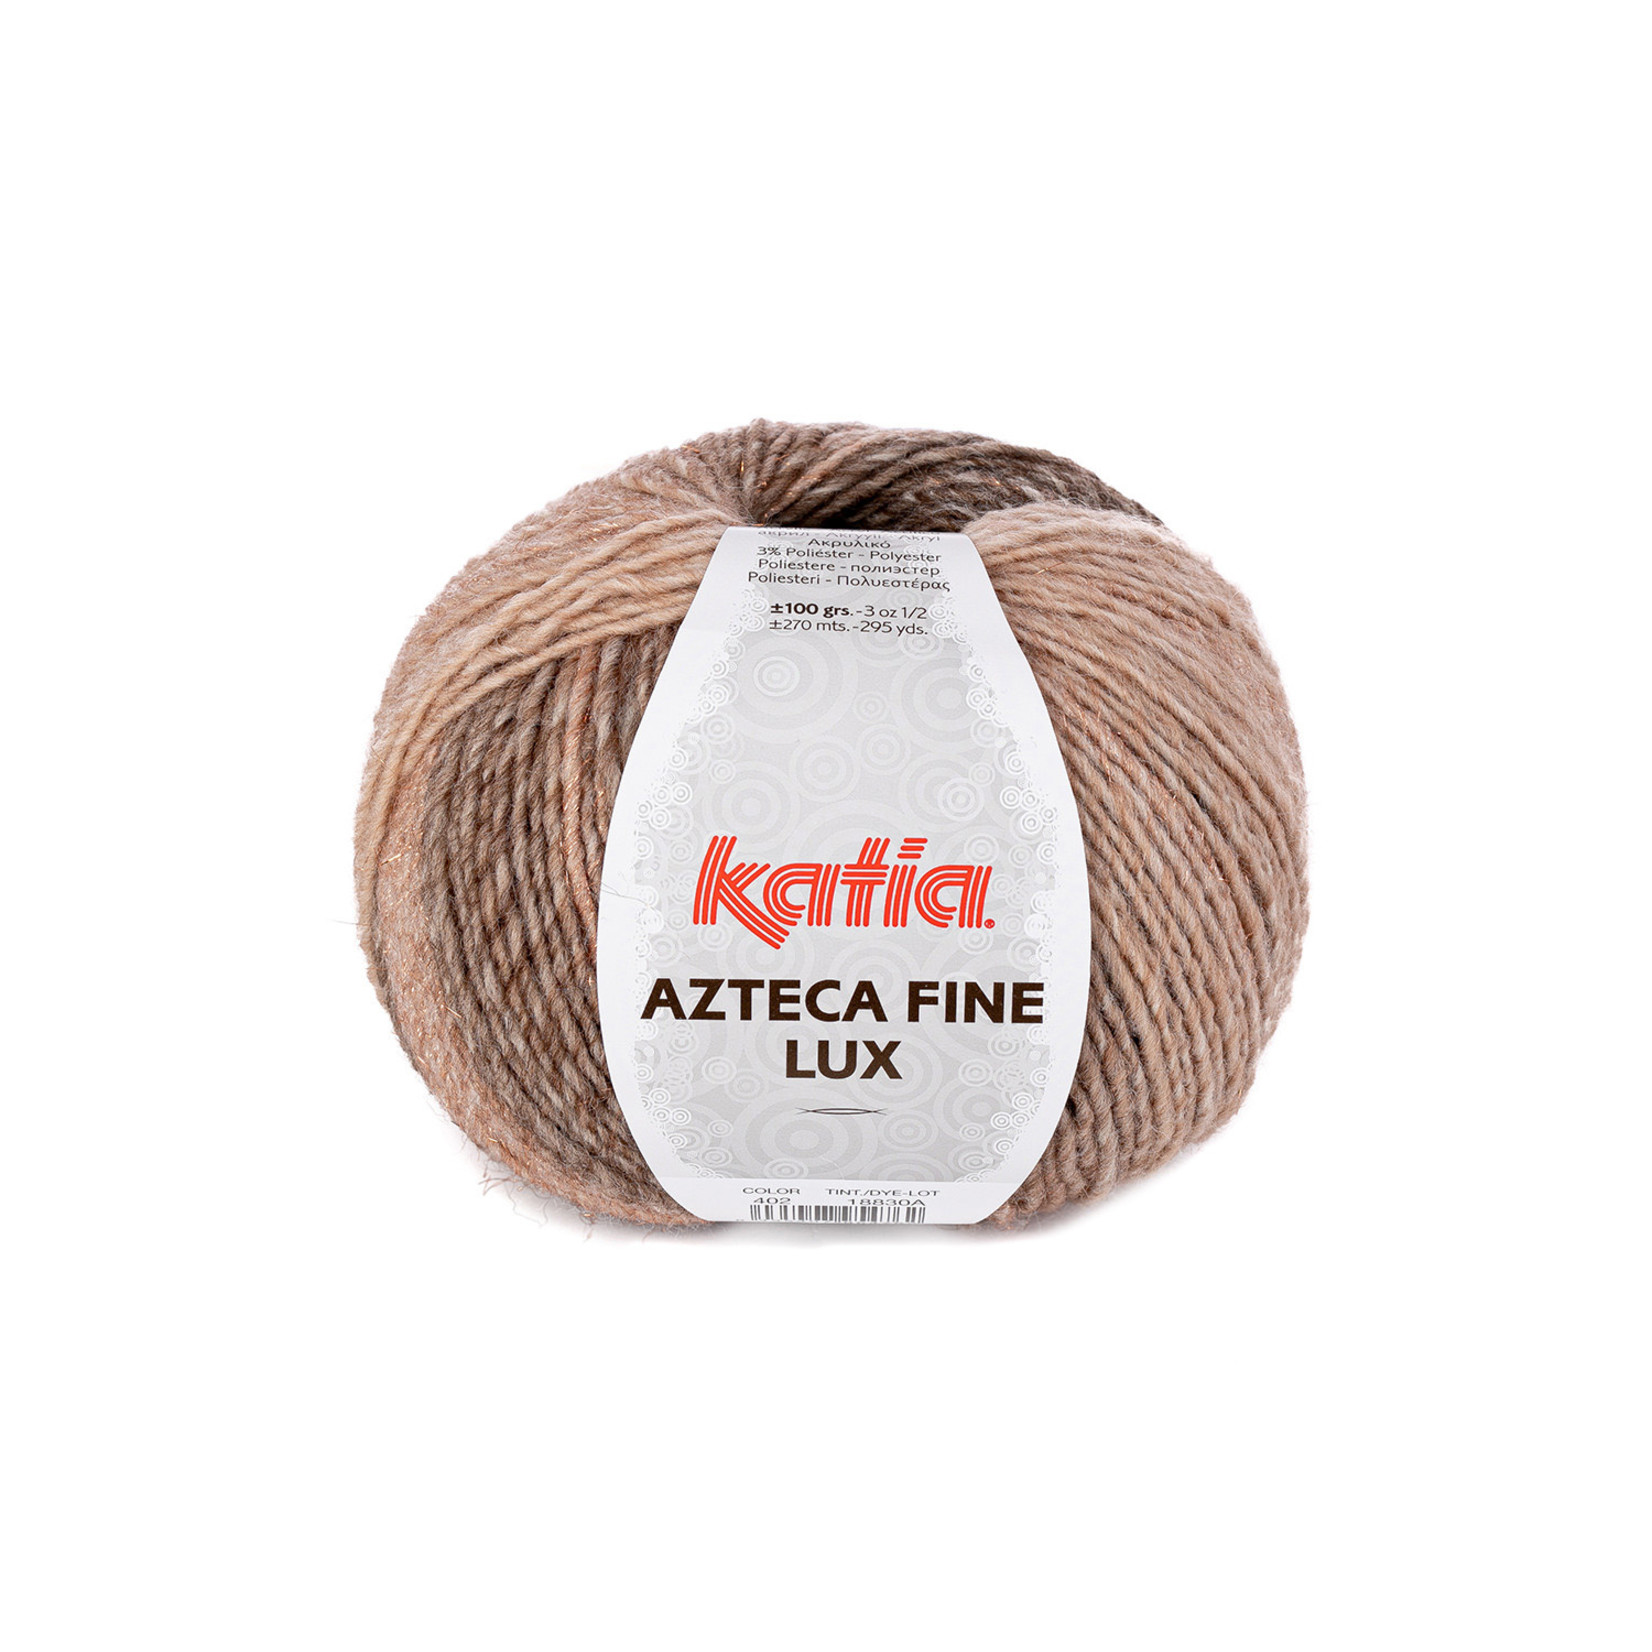 Katia Azteca Fine Lux  402 Beige-Bruin